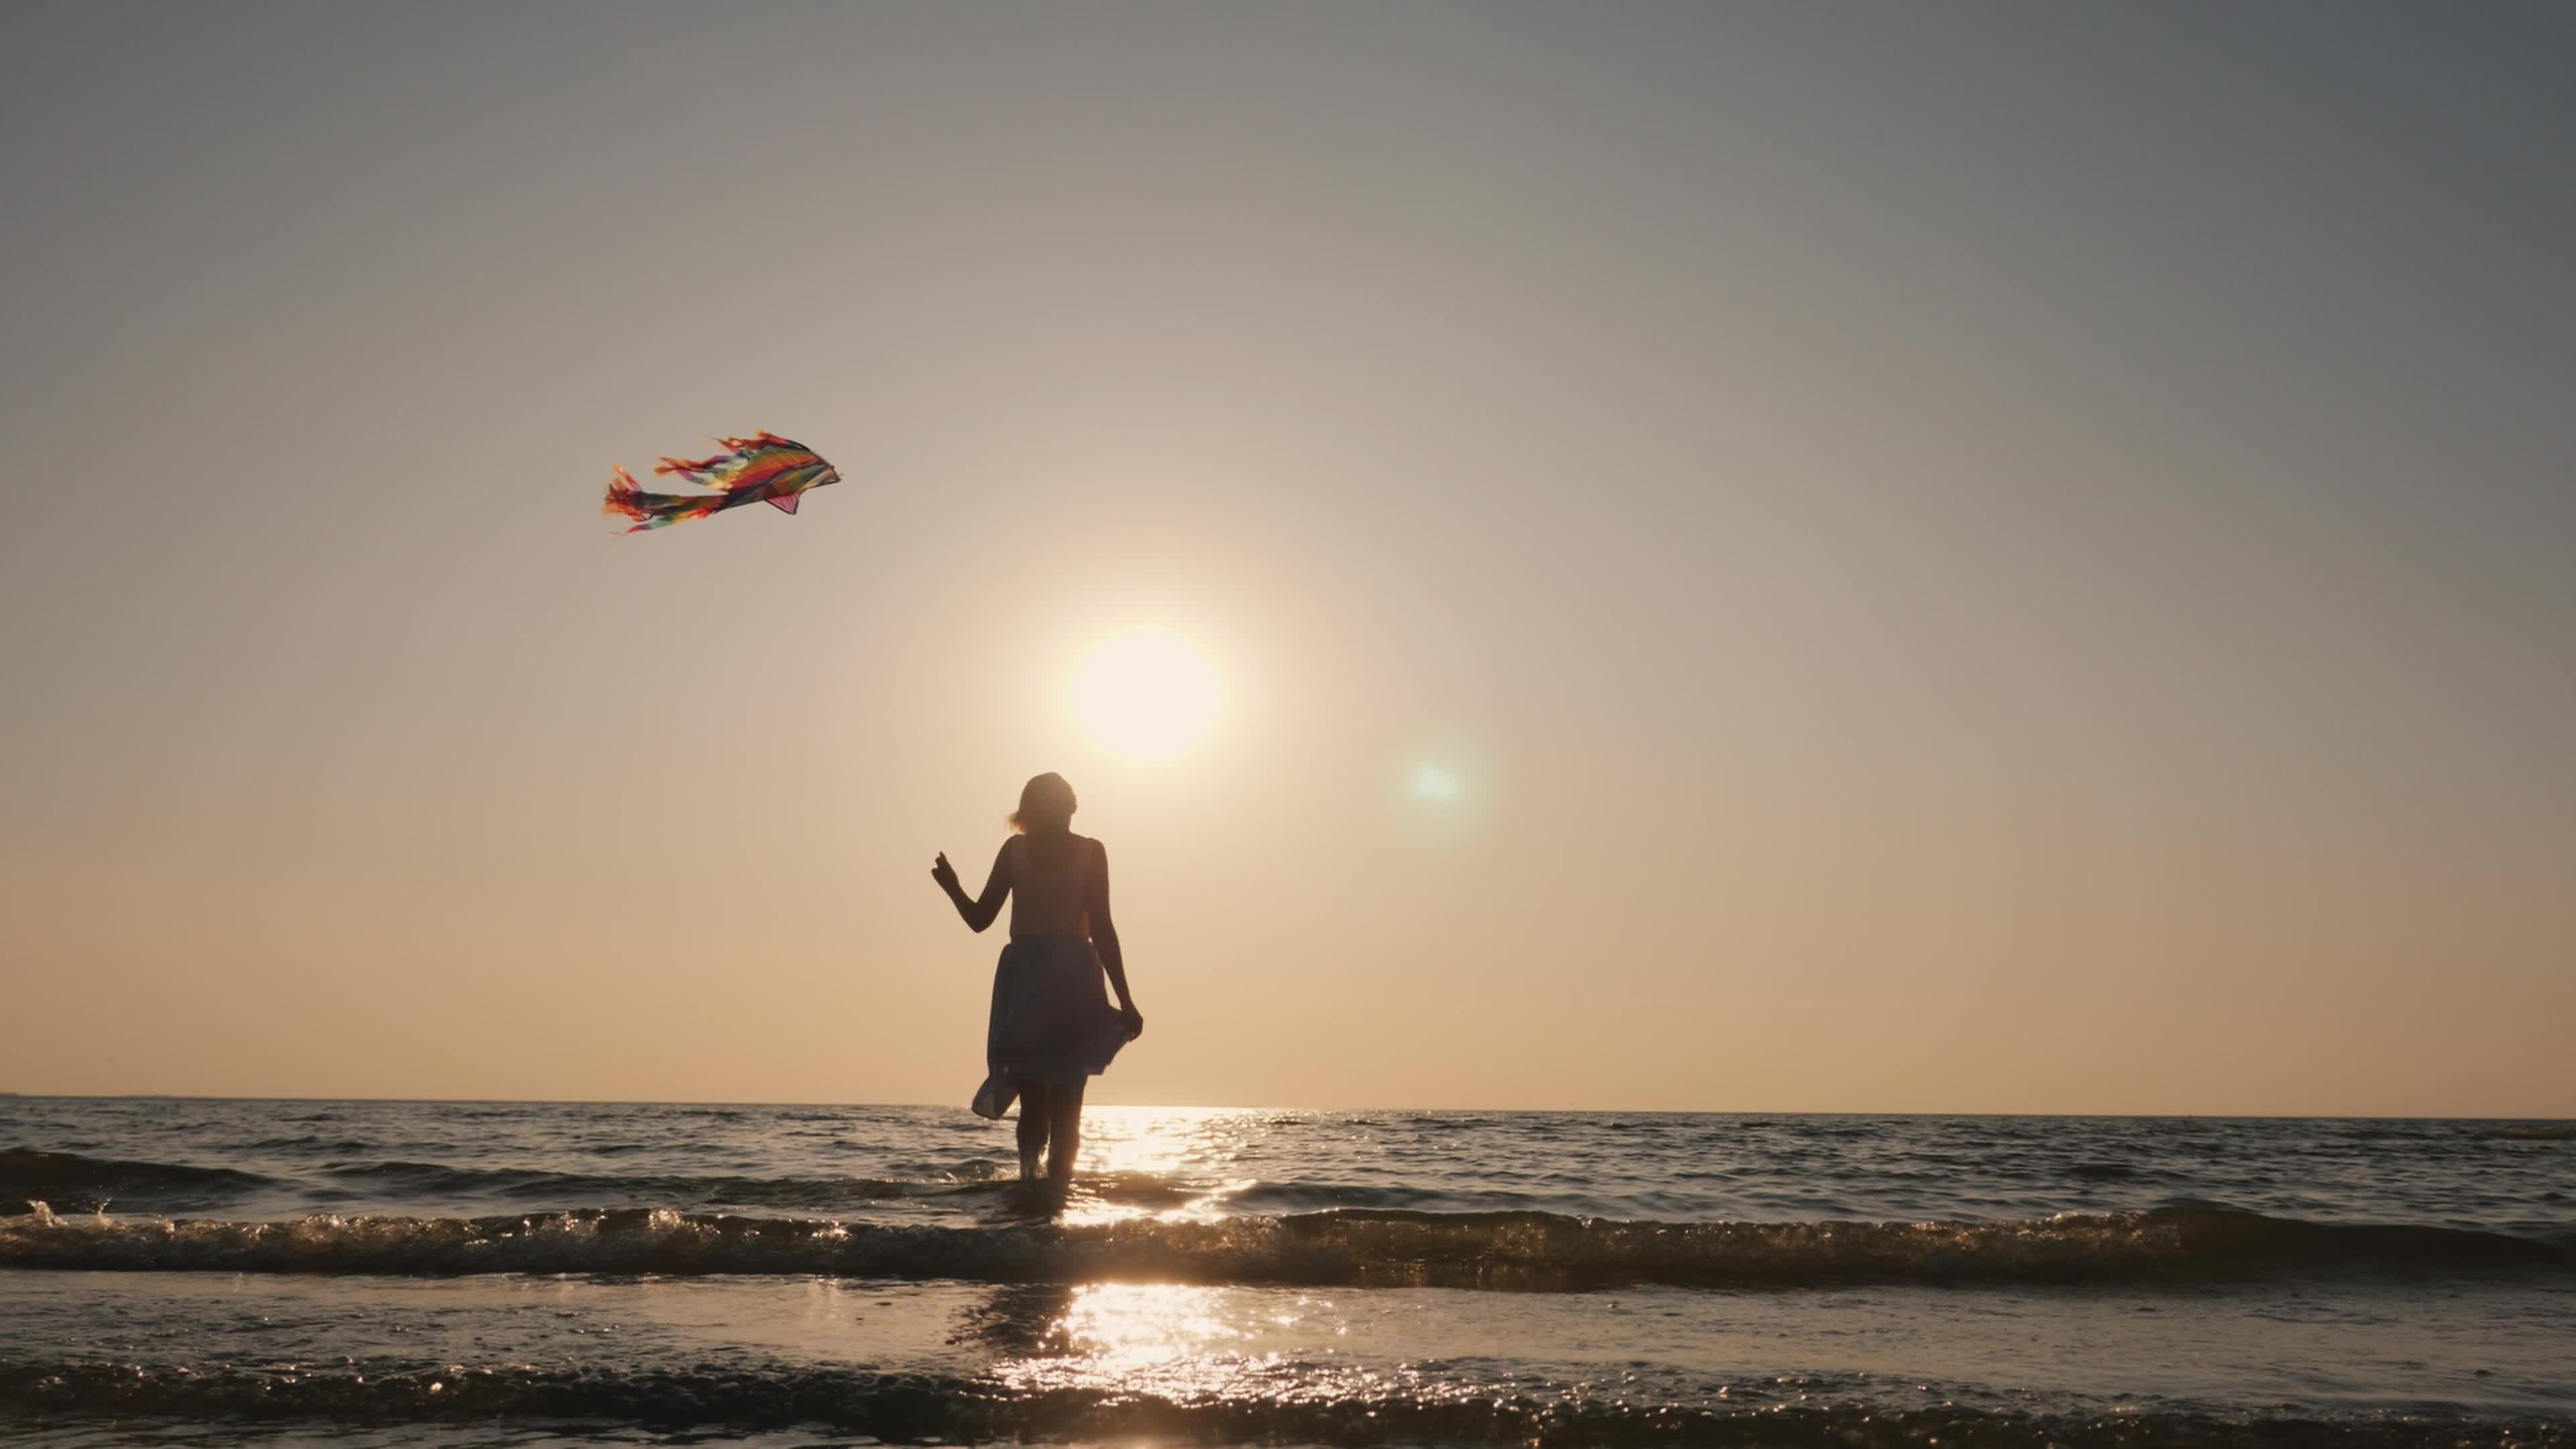 100 多张免费的“放风筝”和“风筝”照片 - Pixabay